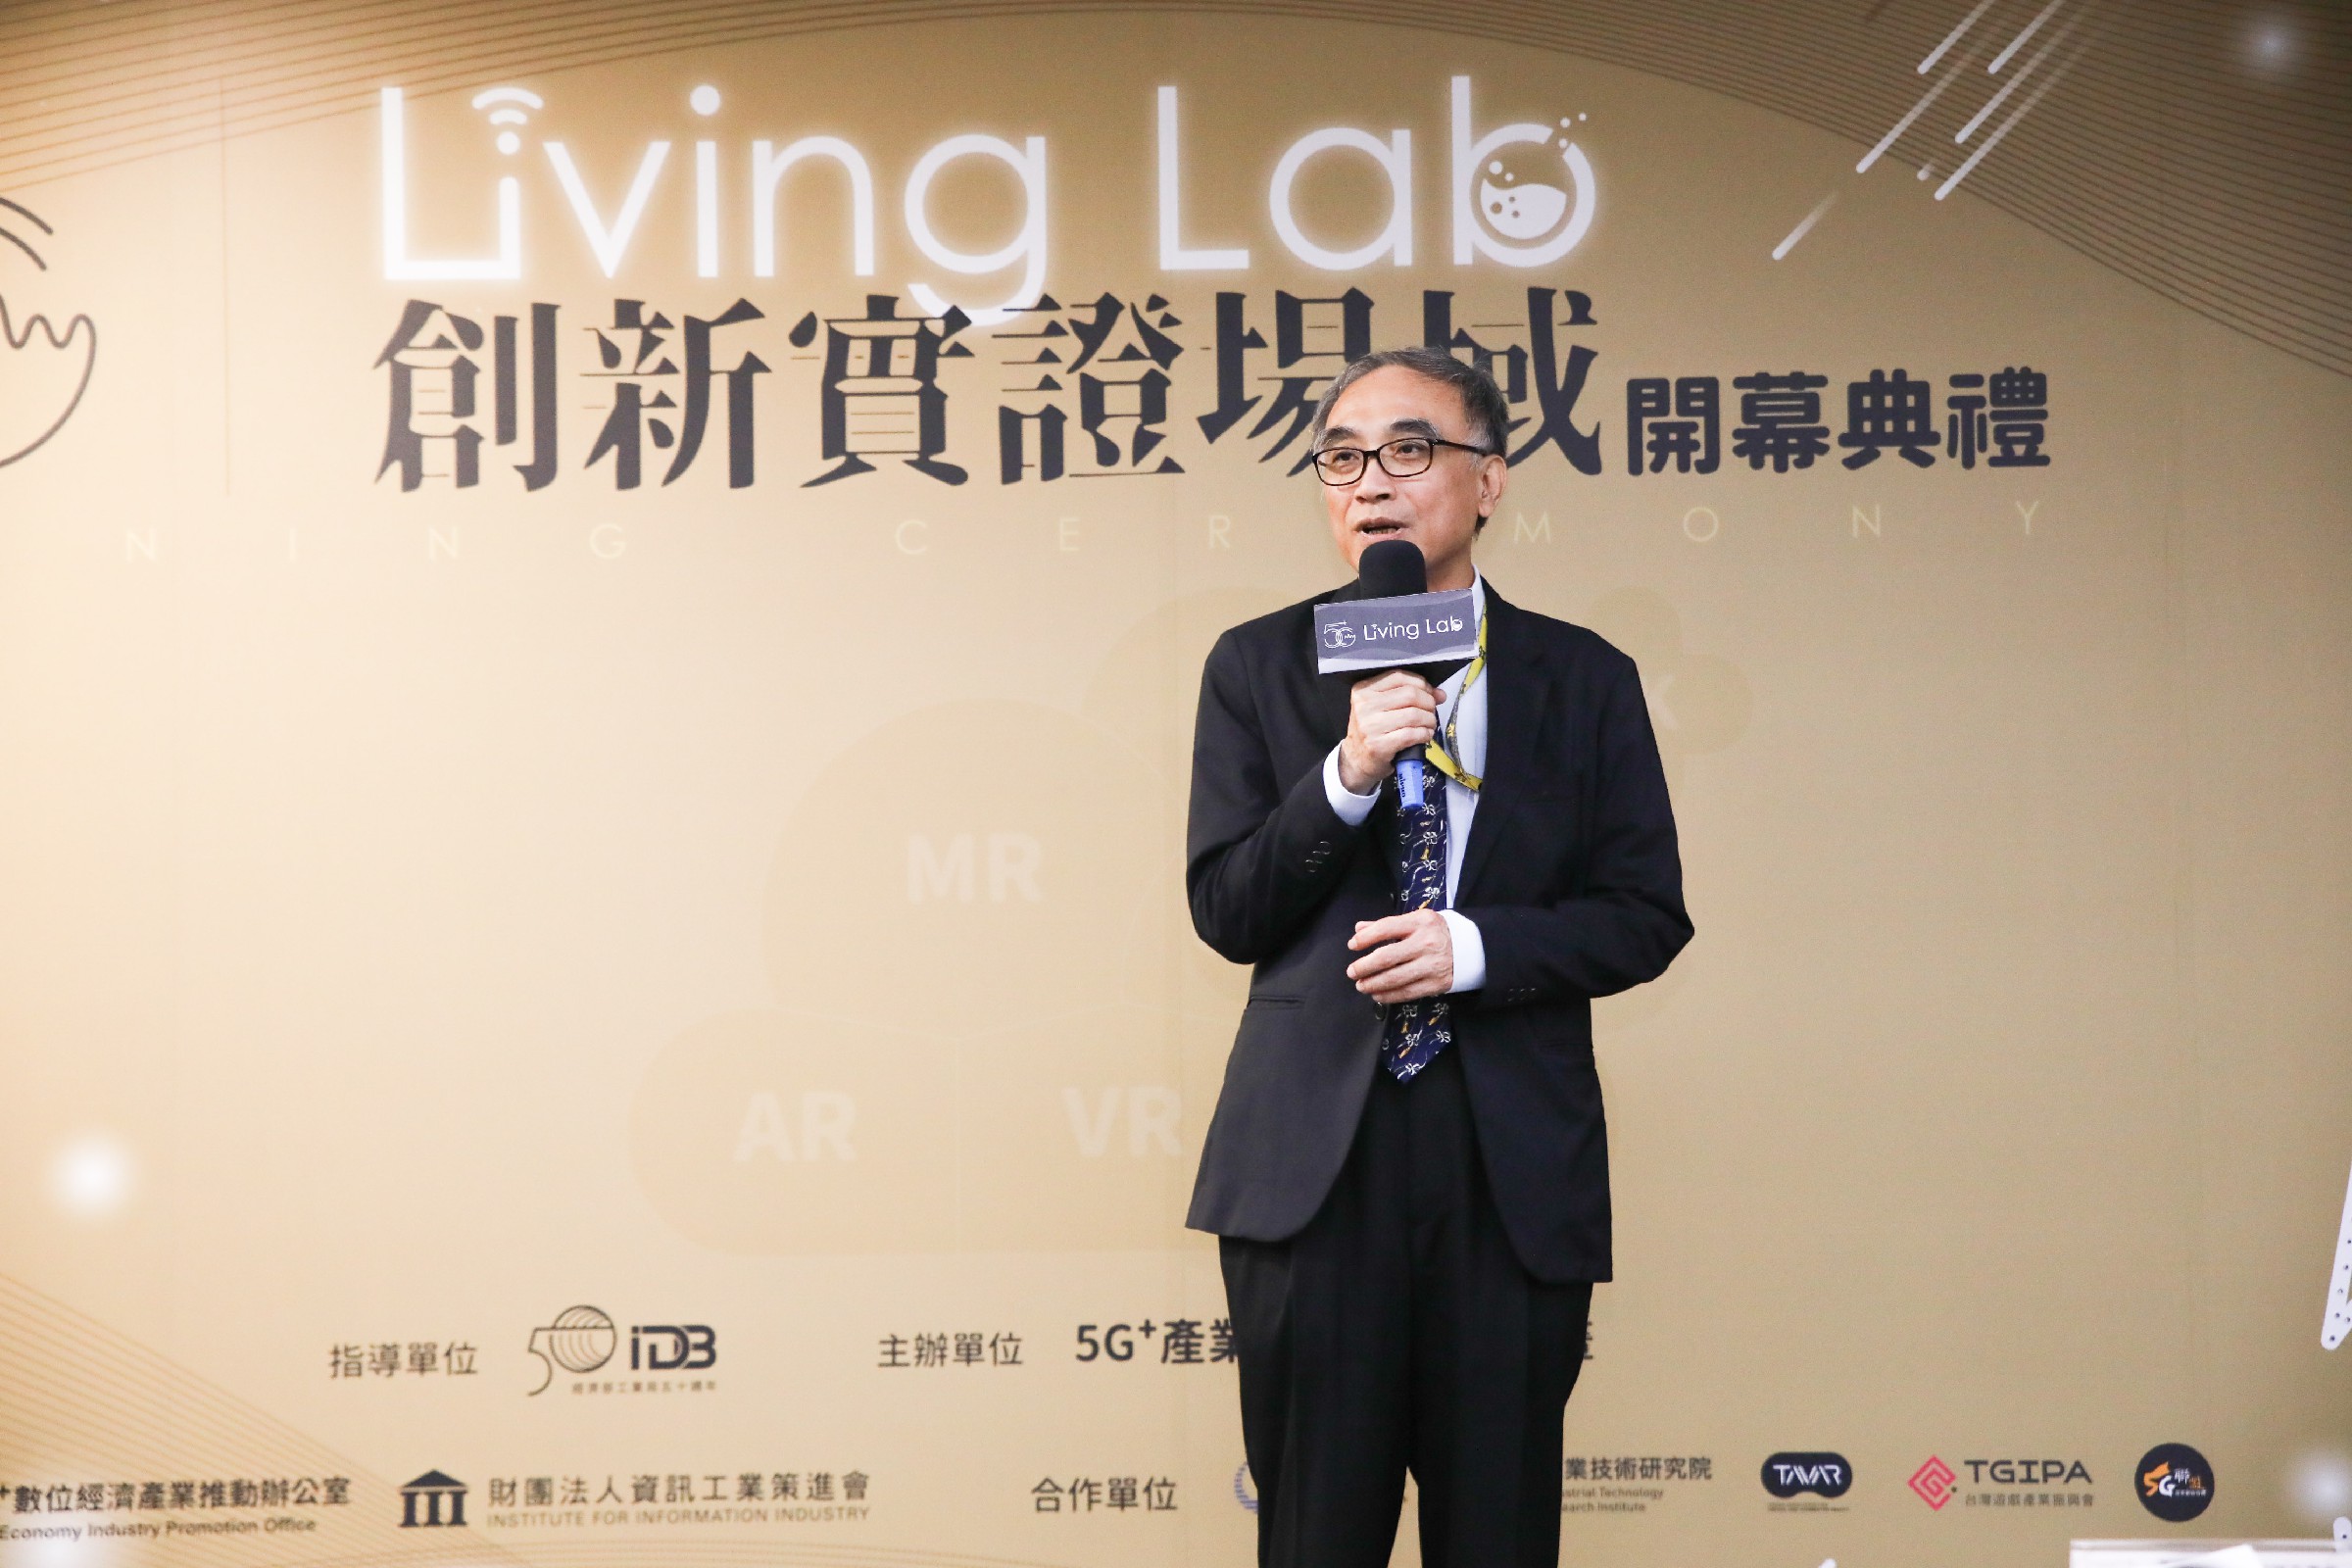 5G Living Lab實證場域開幕儀式